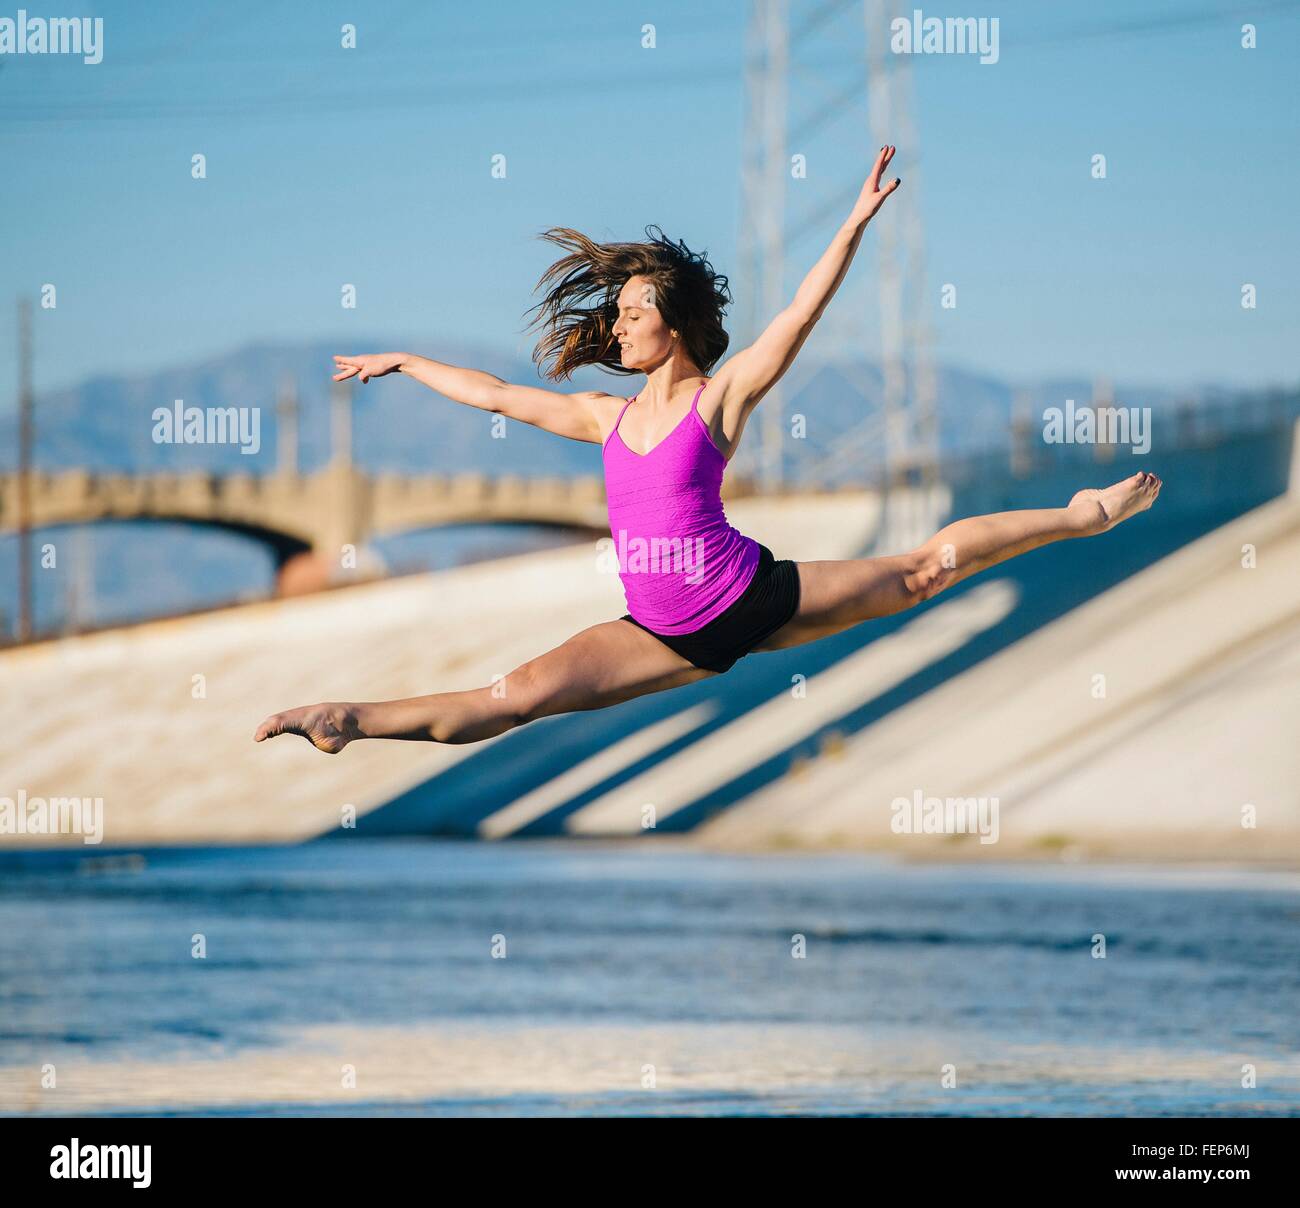 Tänzerin in der Luft, erhobenen Armen machen den Spagat, Los Angeles, Kalifornien, USA Stockfoto